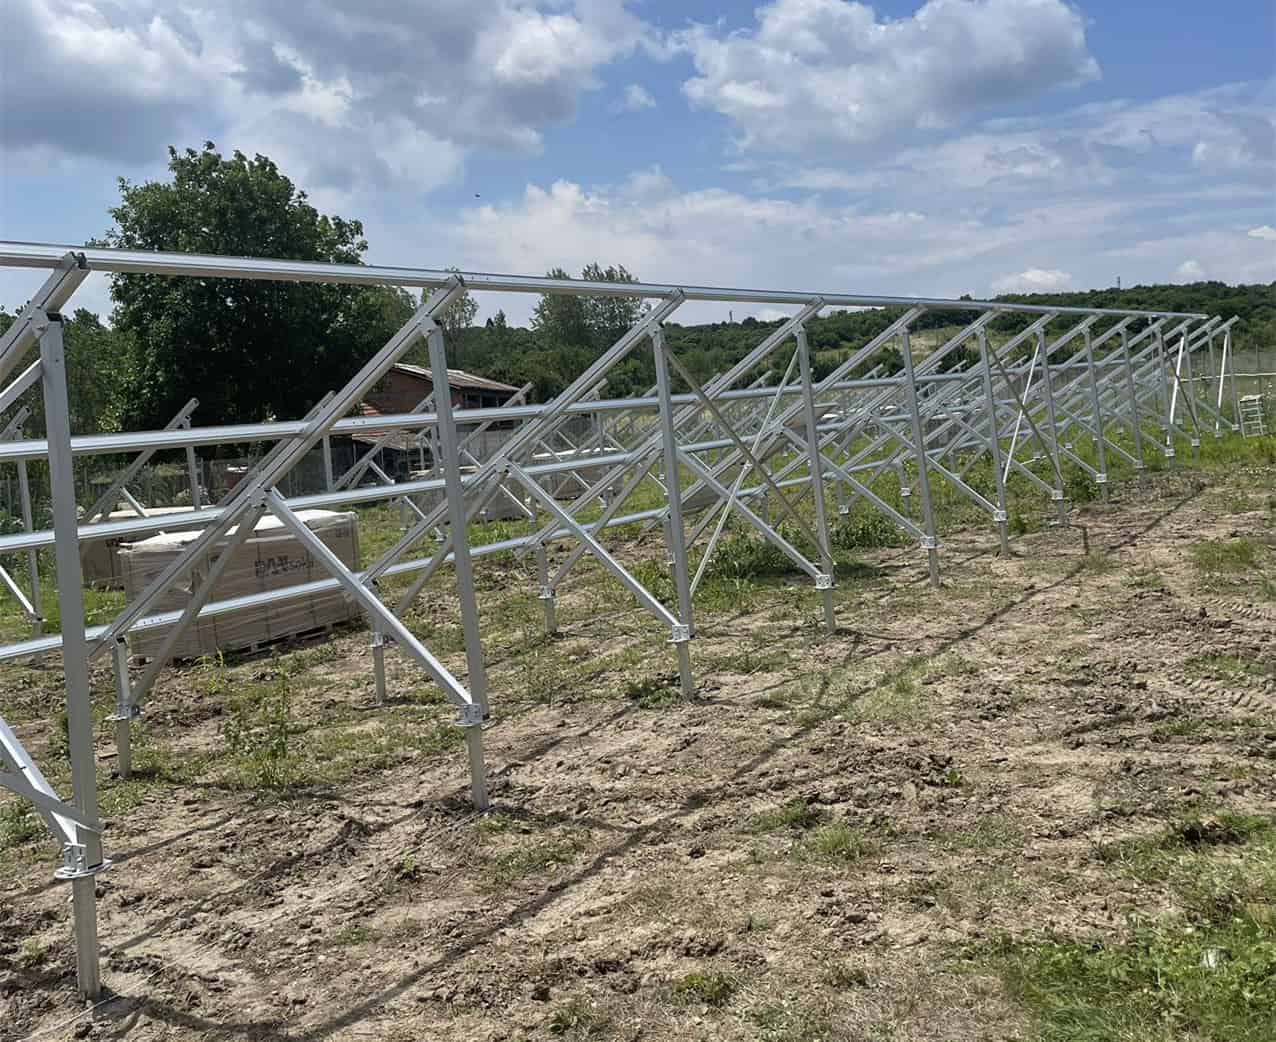 1MW Solar Farm Under Construction In Bulgaria